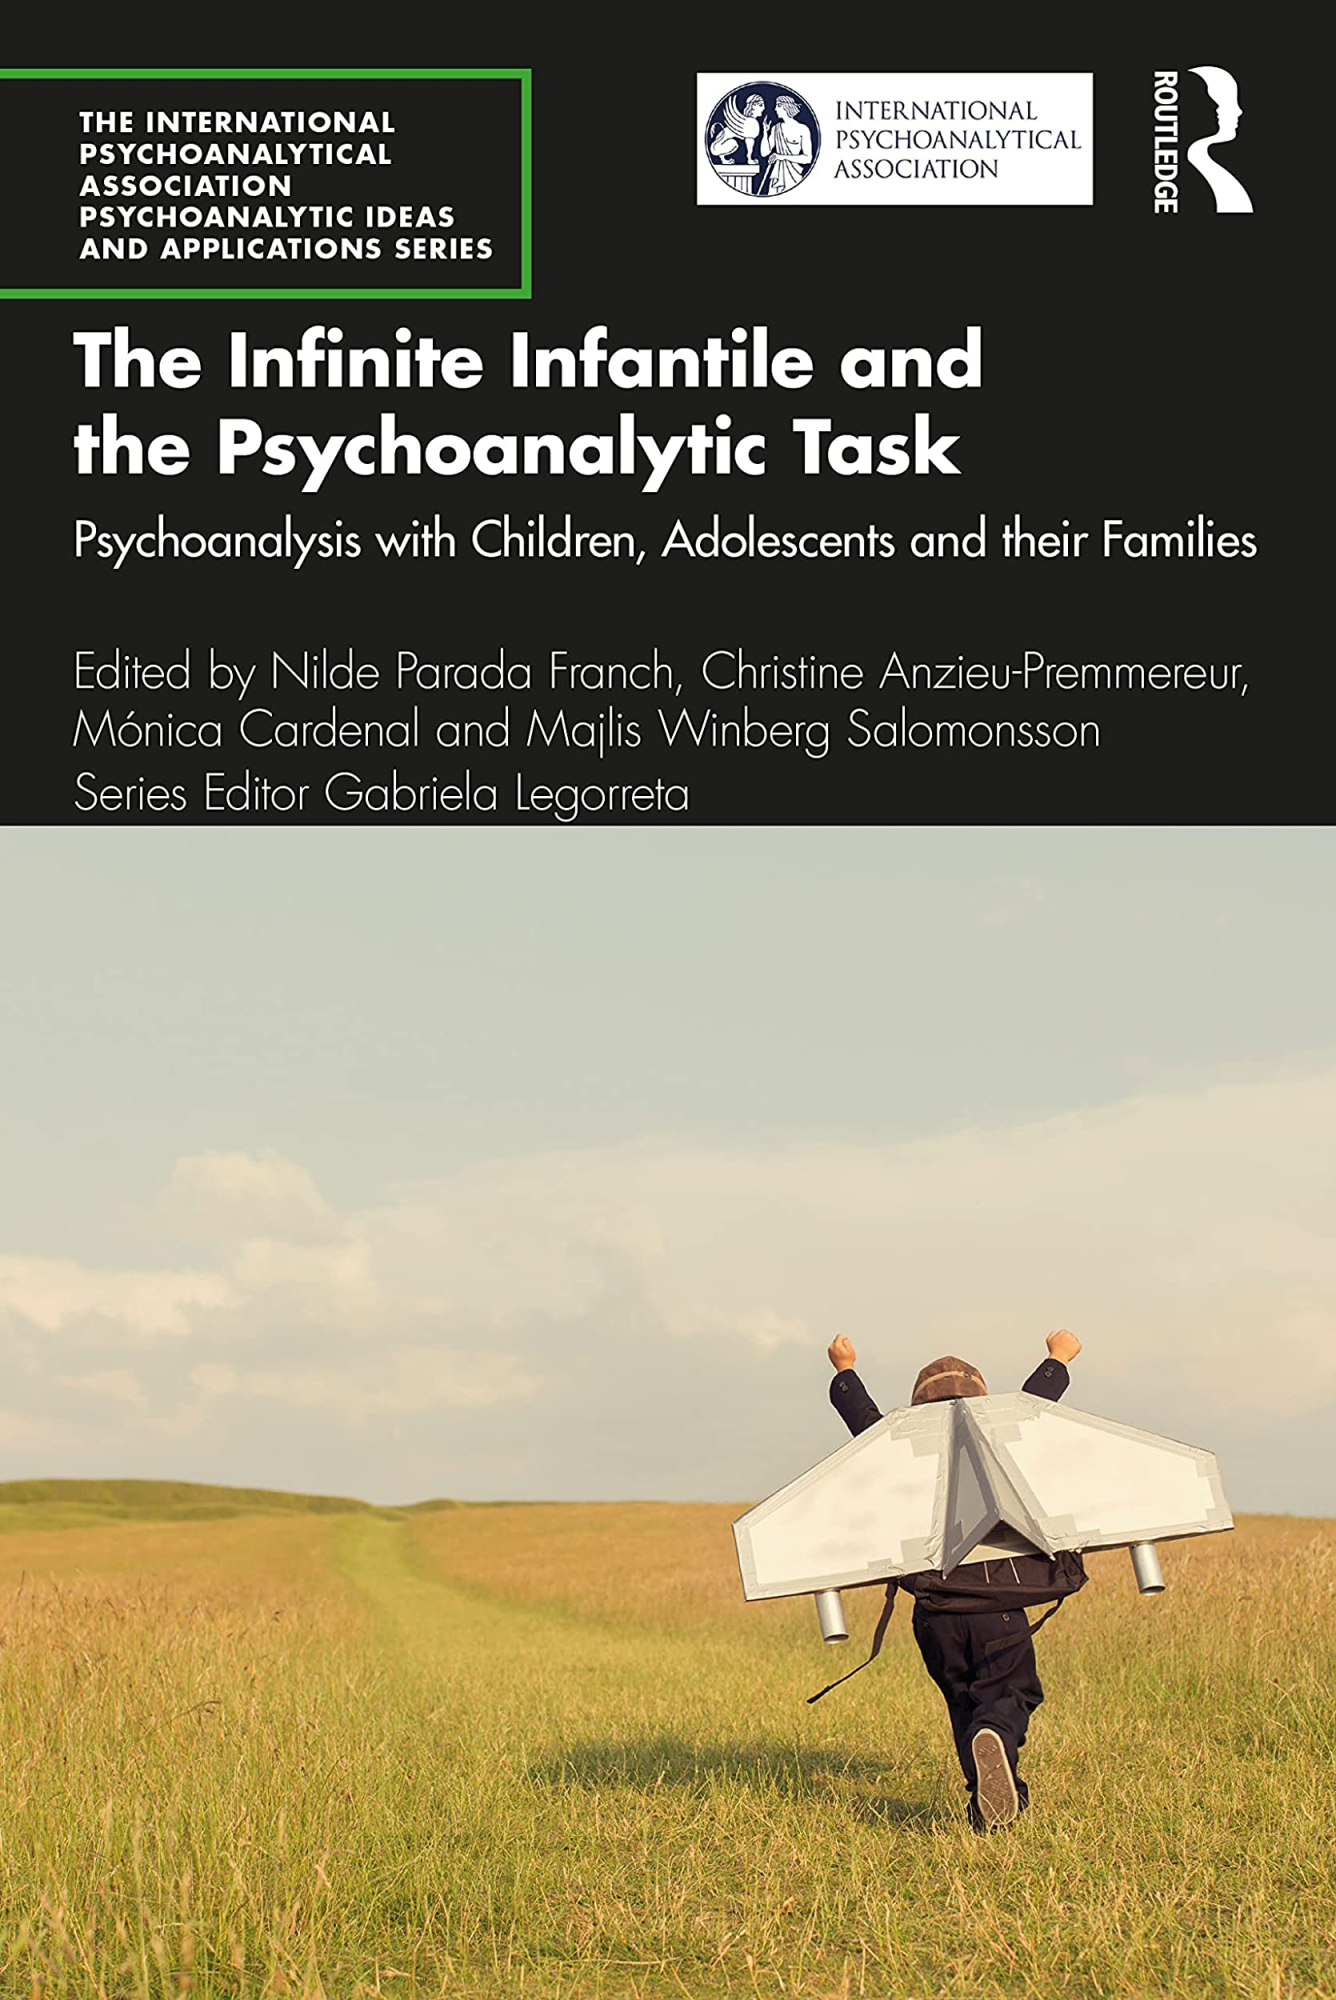 Libri The Infinite Infantile And The Psychoanalytic Task NUOVO SIGILLATO, EDIZIONE DEL 10/04/2022 SUBITO DISPONIBILE